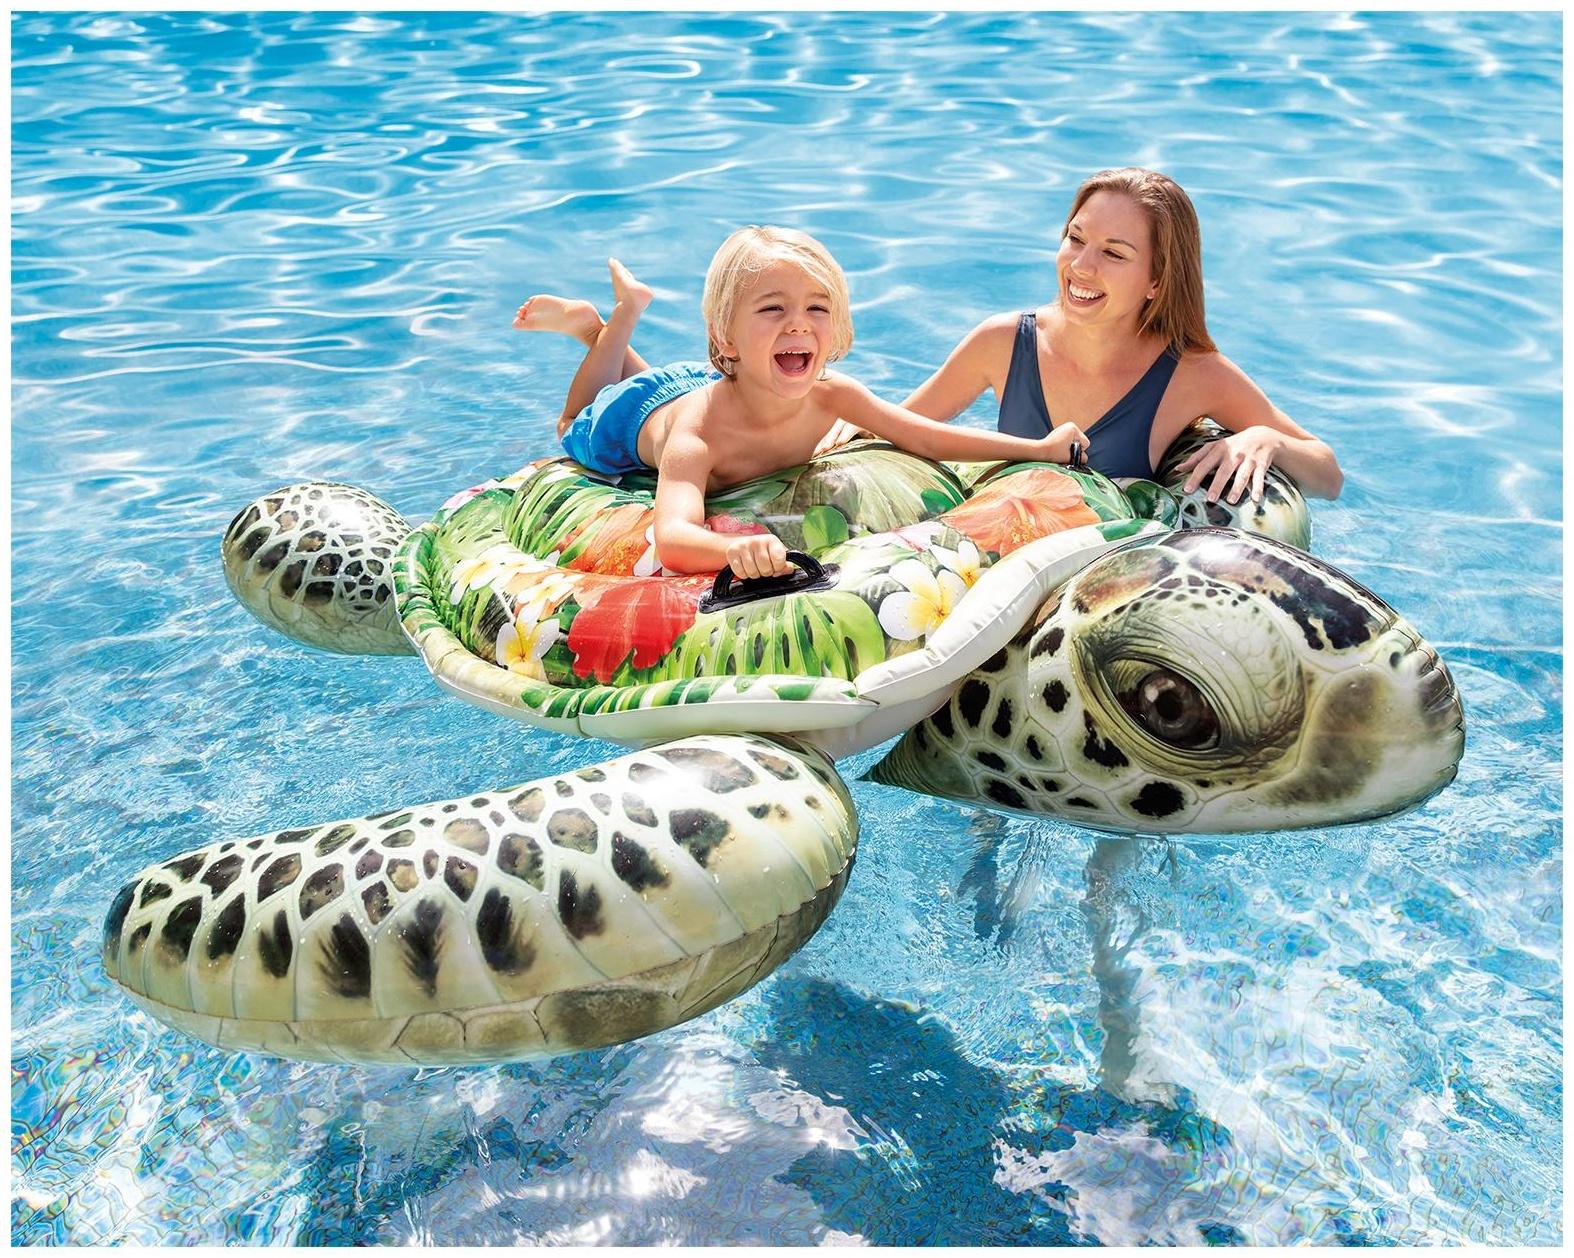 Игрушка для плавания «Черепаха», от 3 лет, 57555NP INTEX